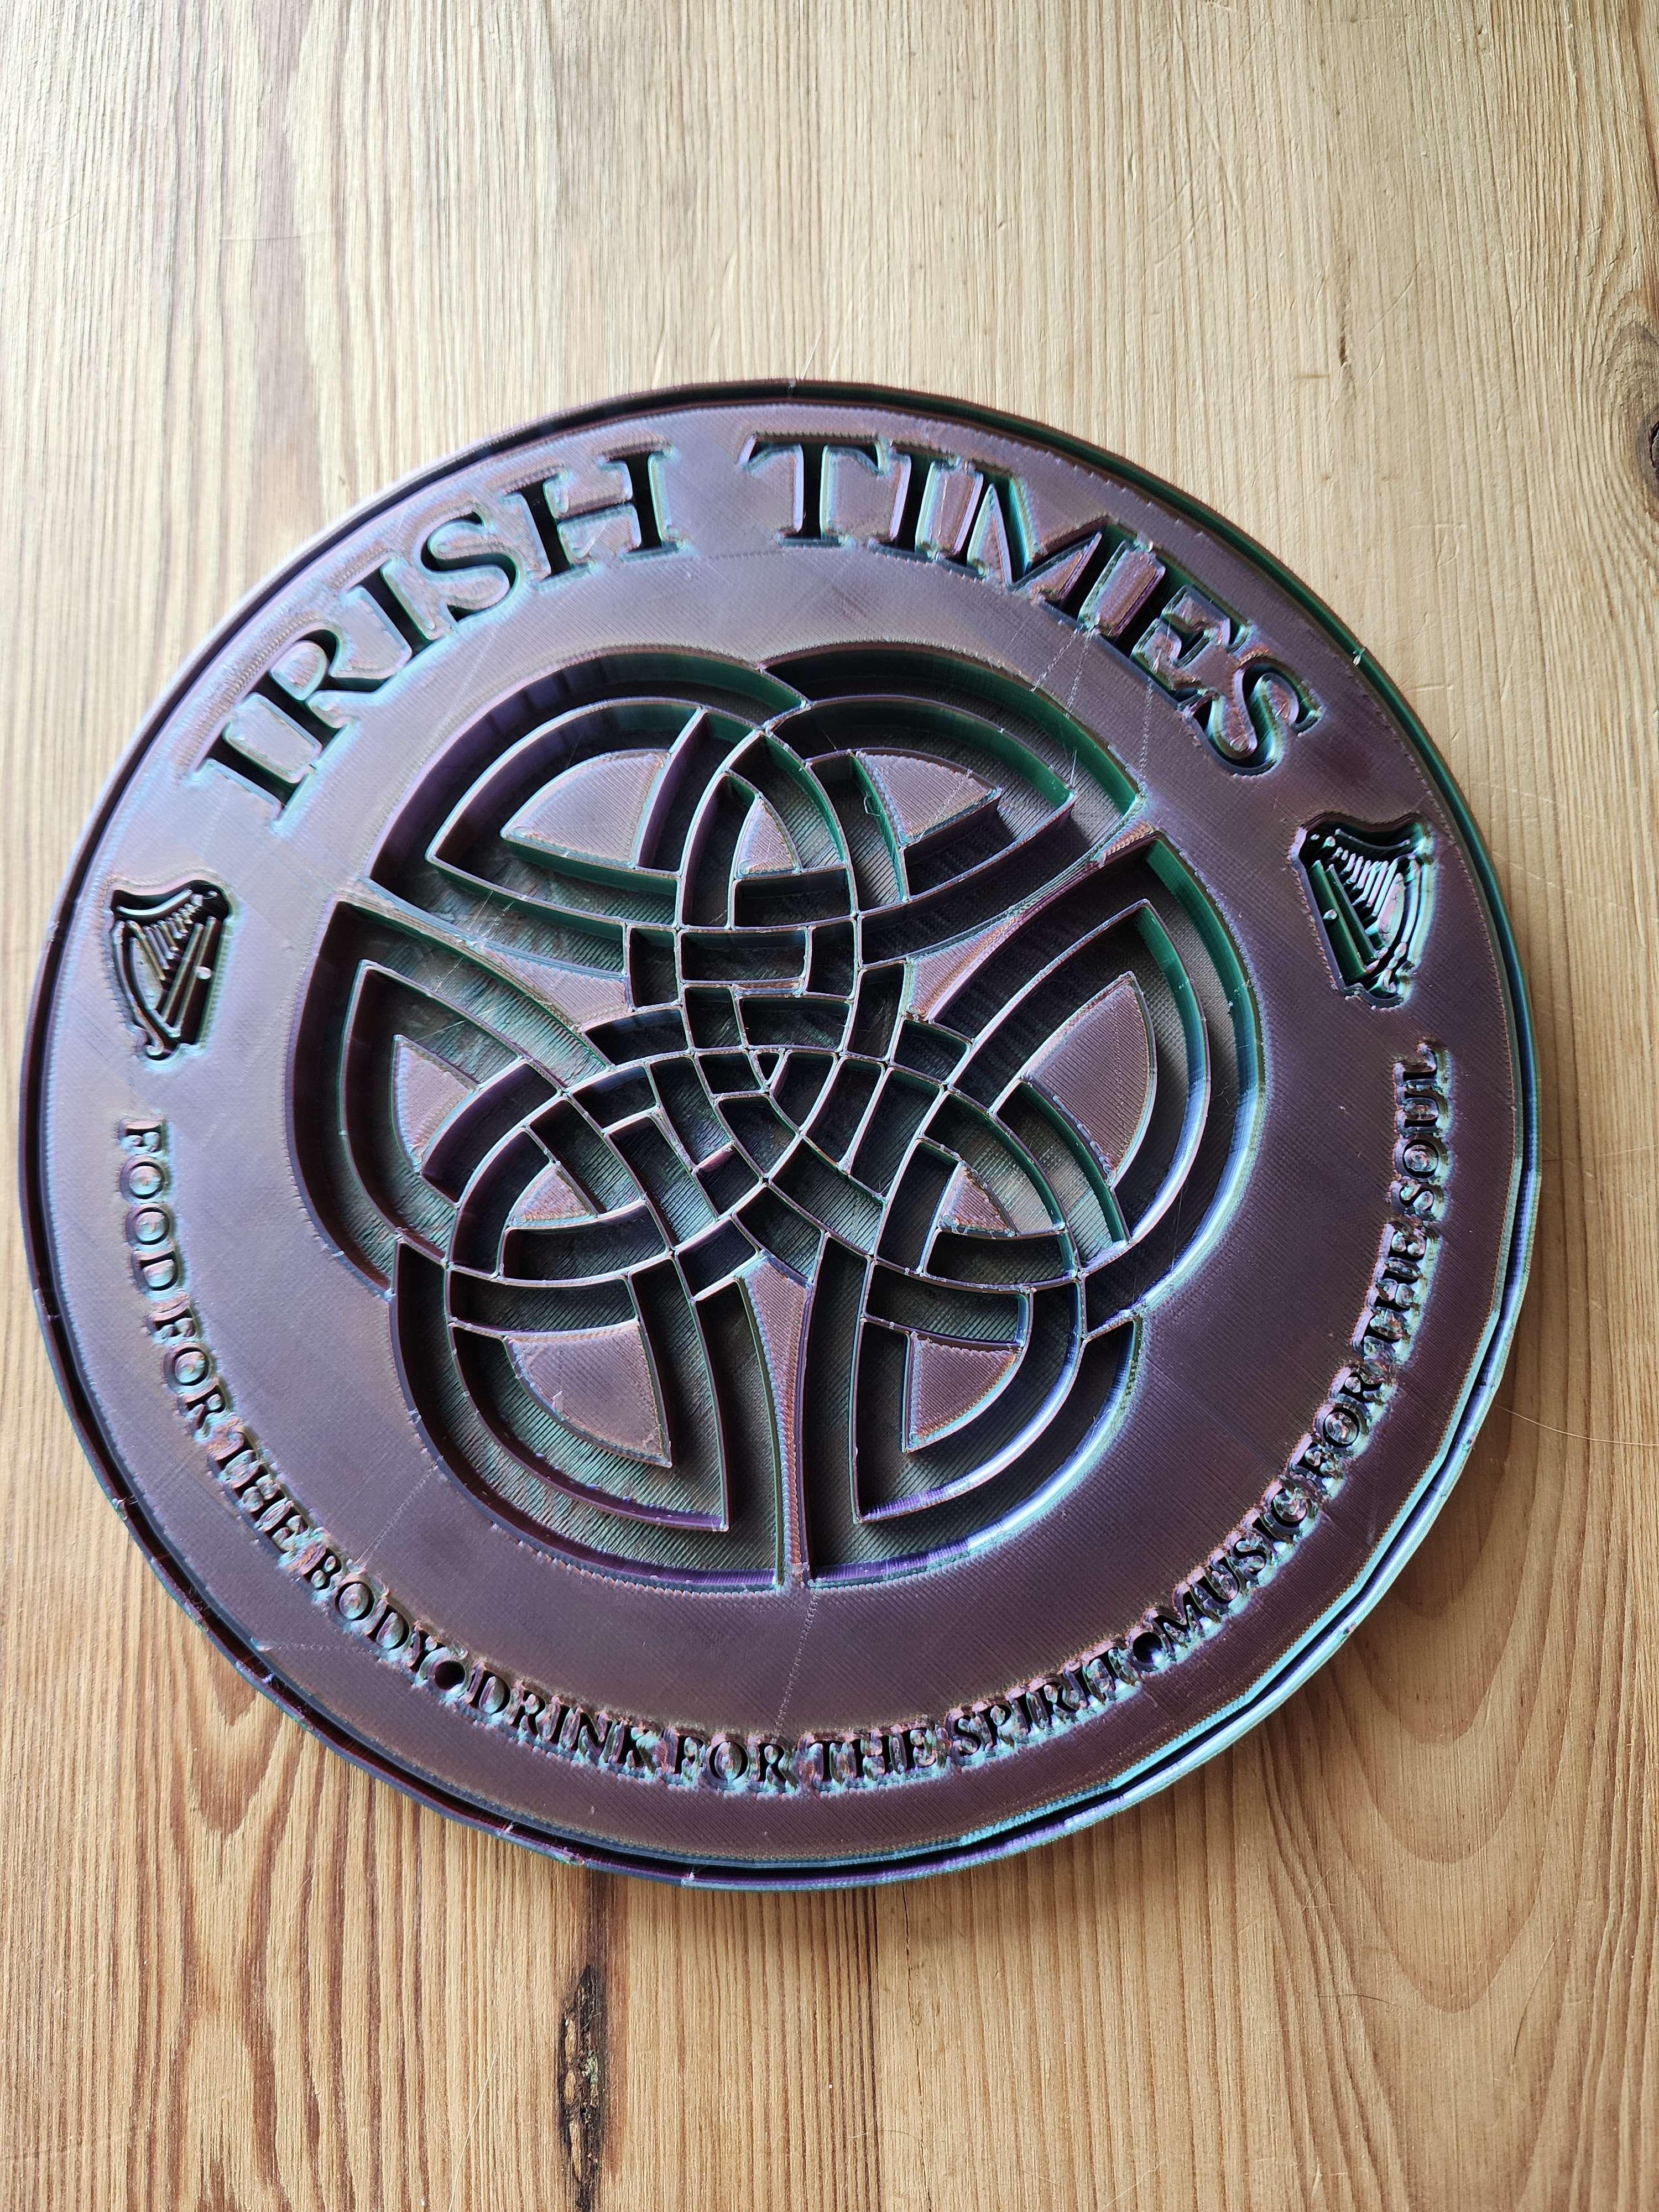 Irish times .stl 3d model